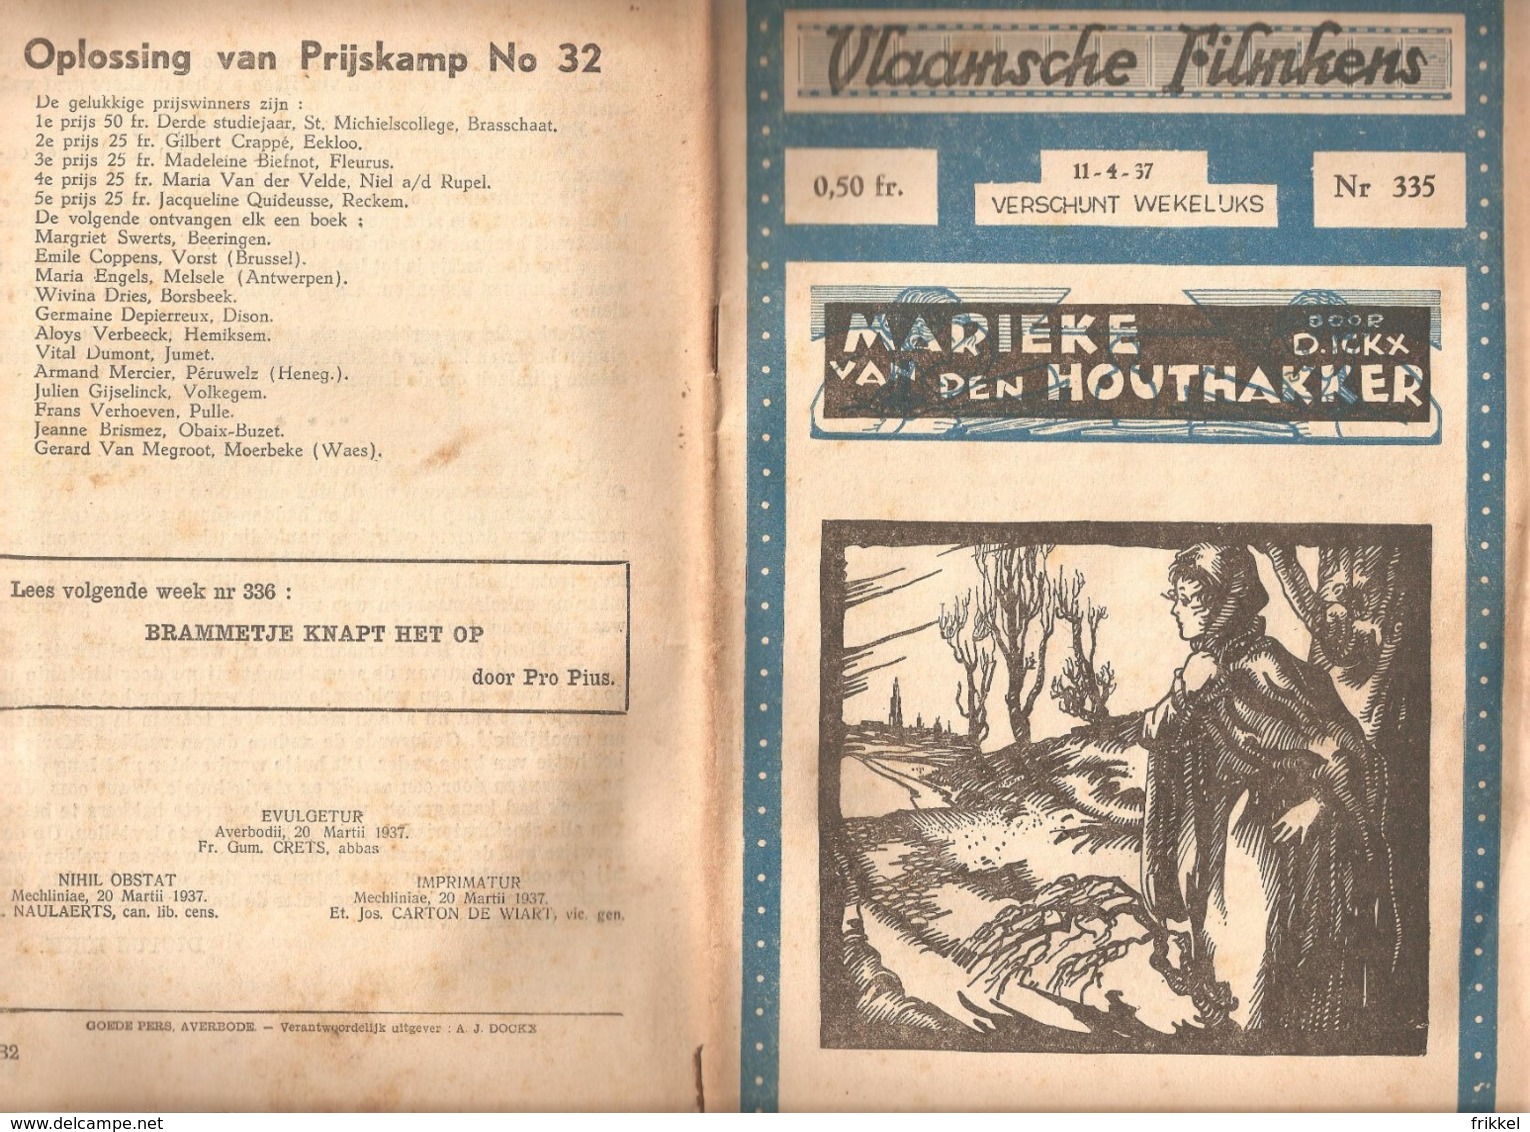 Vlaamsche Filmkens 335 Marieke Van Den Houthakker D Ickx 1937 GROOT FORMAAT: 16x23,5cm Averbode's Jeugbibliotheek - Vecchi